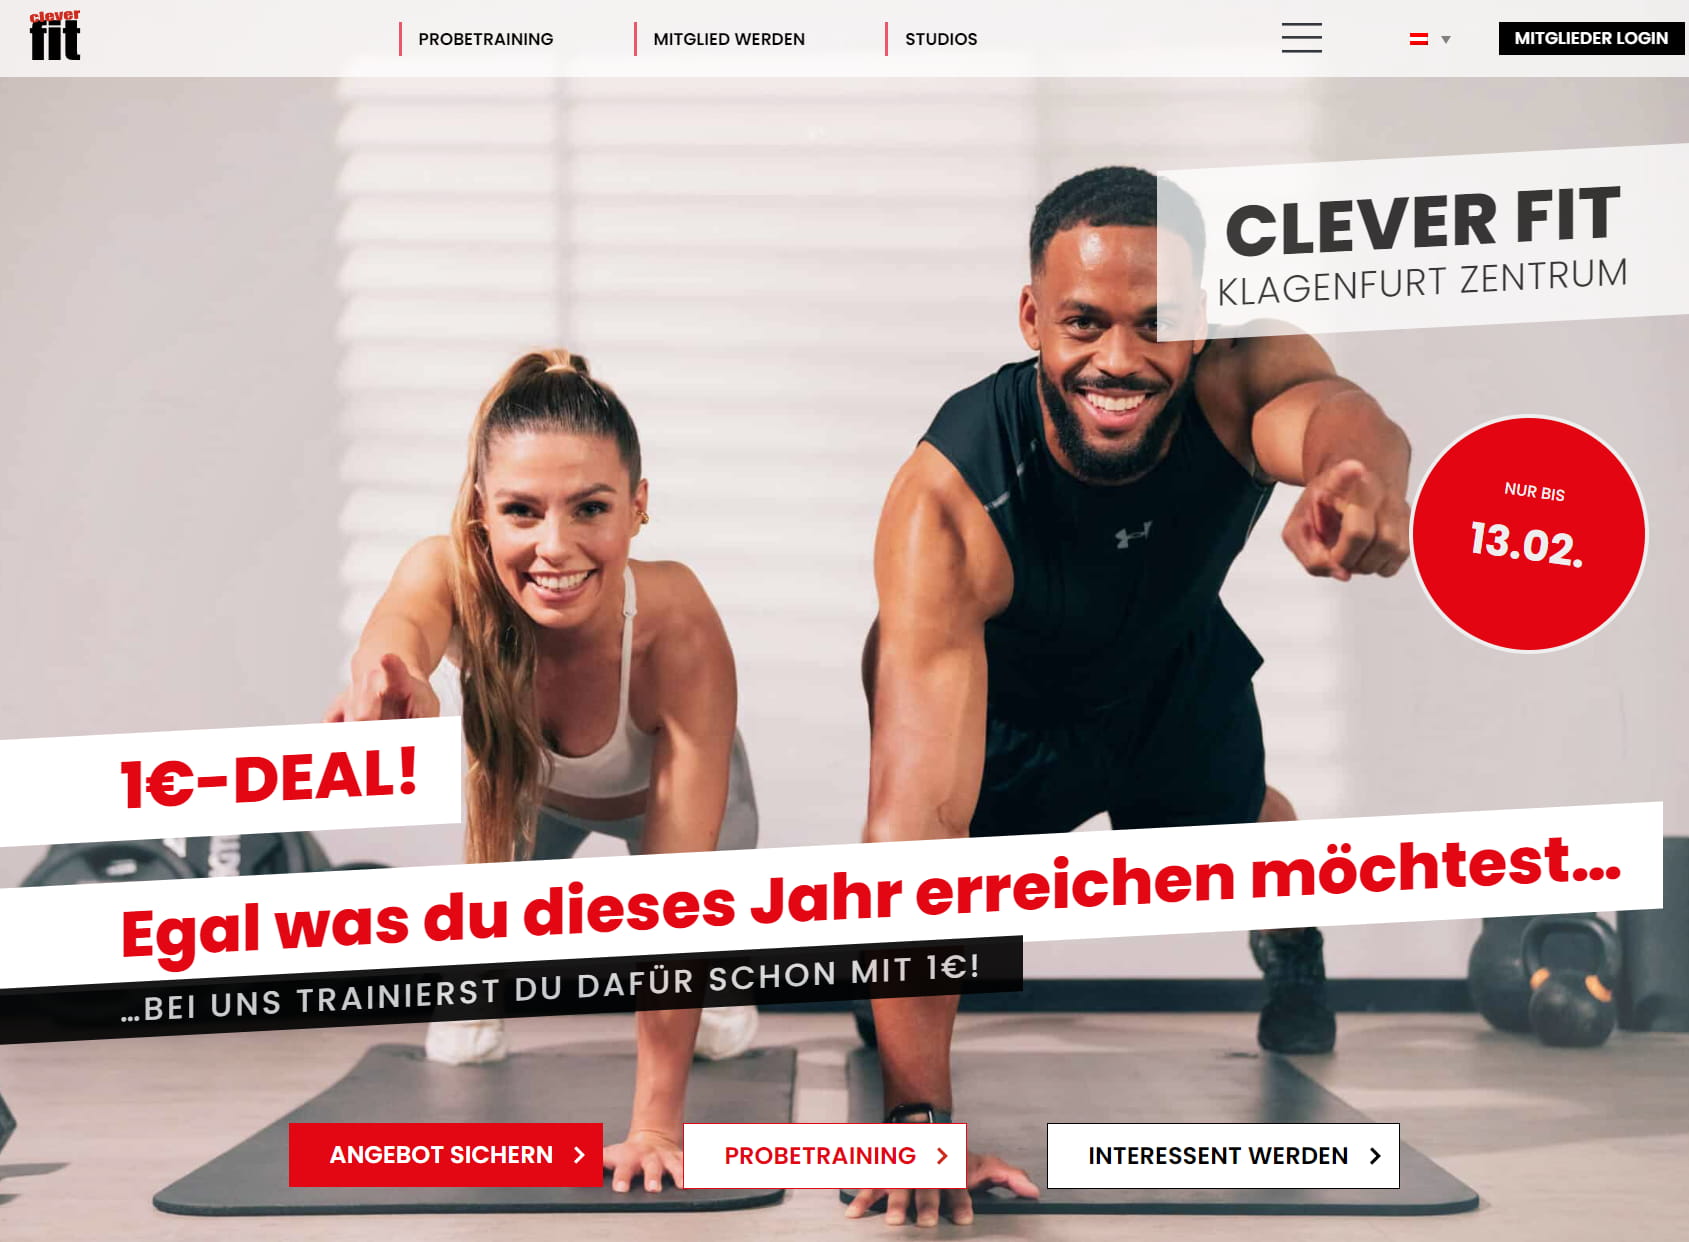 clever fit Klagenfurt Zentrum